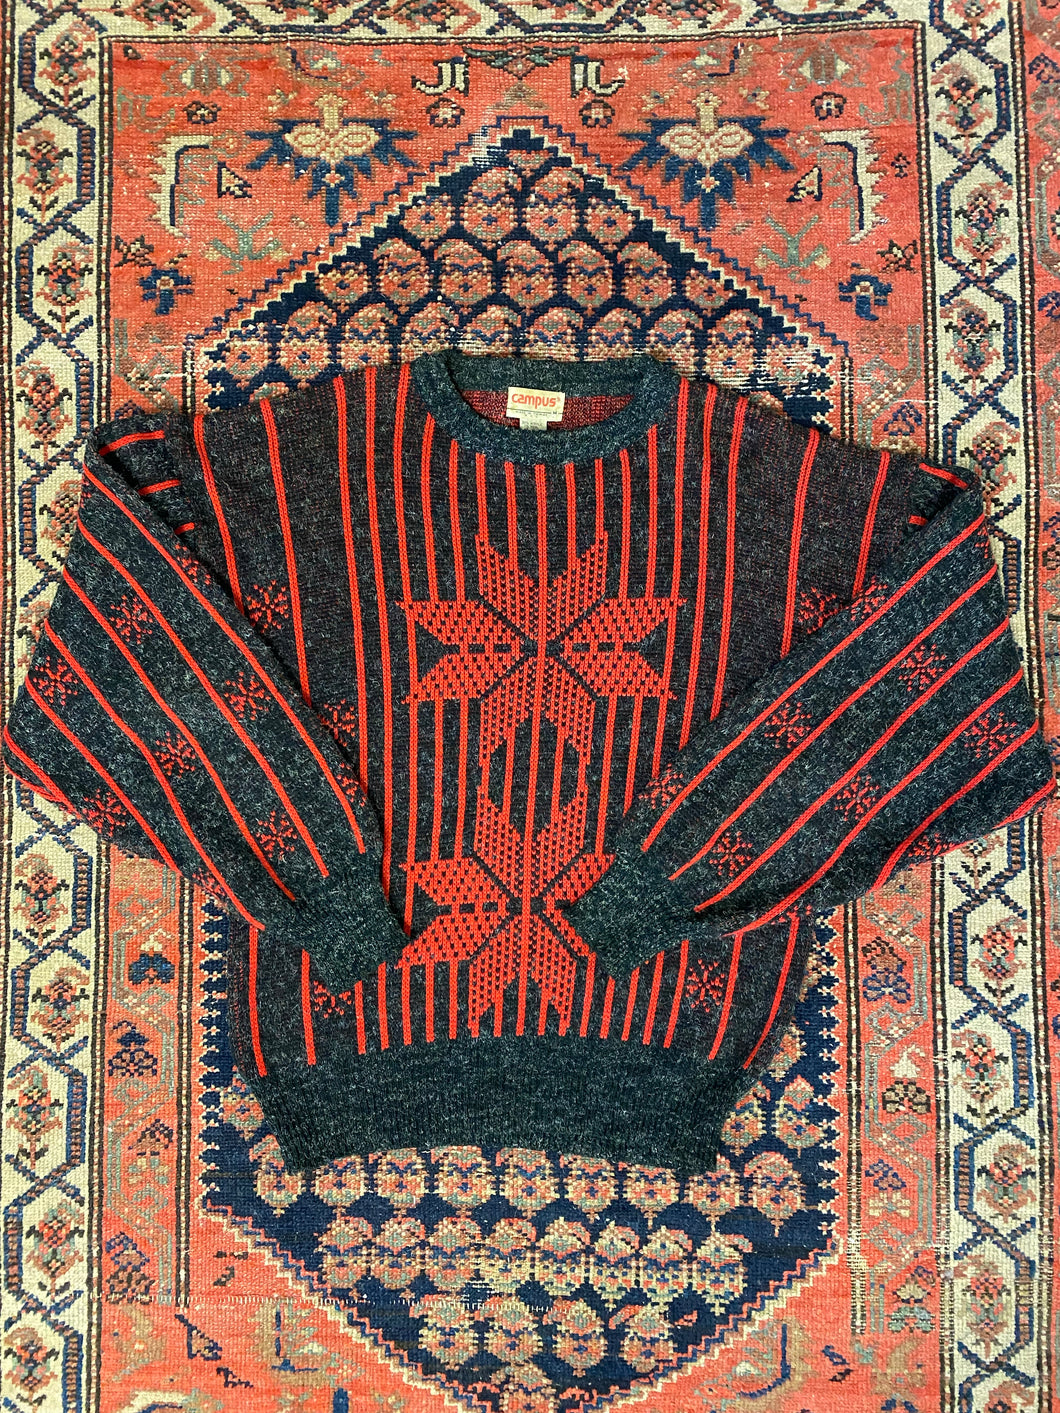 Vintage Stripped Knit Sweater - L